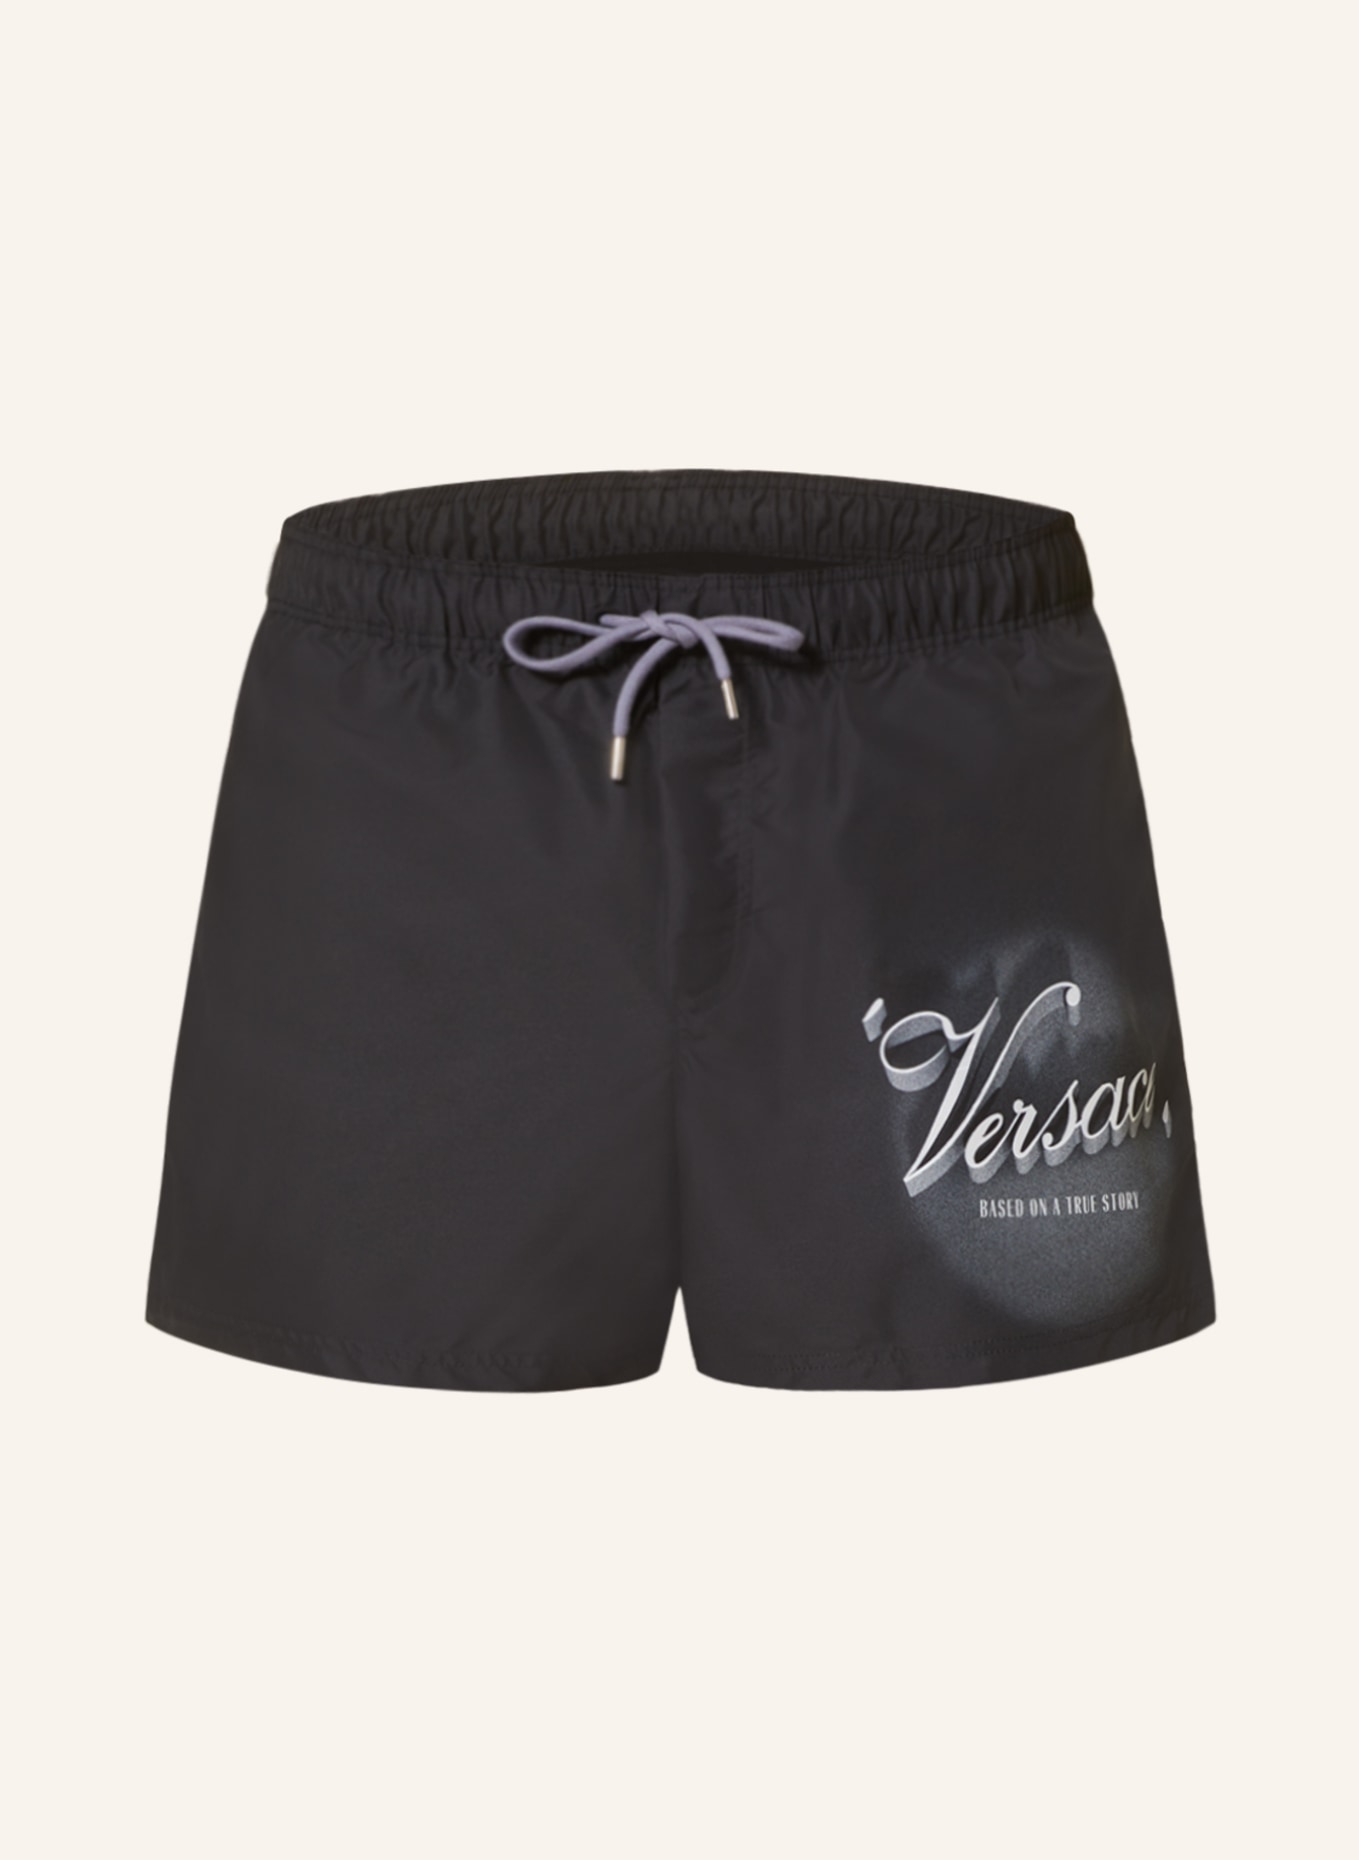 VERSACE Swim shorts, Color: BLACK (Image 1)